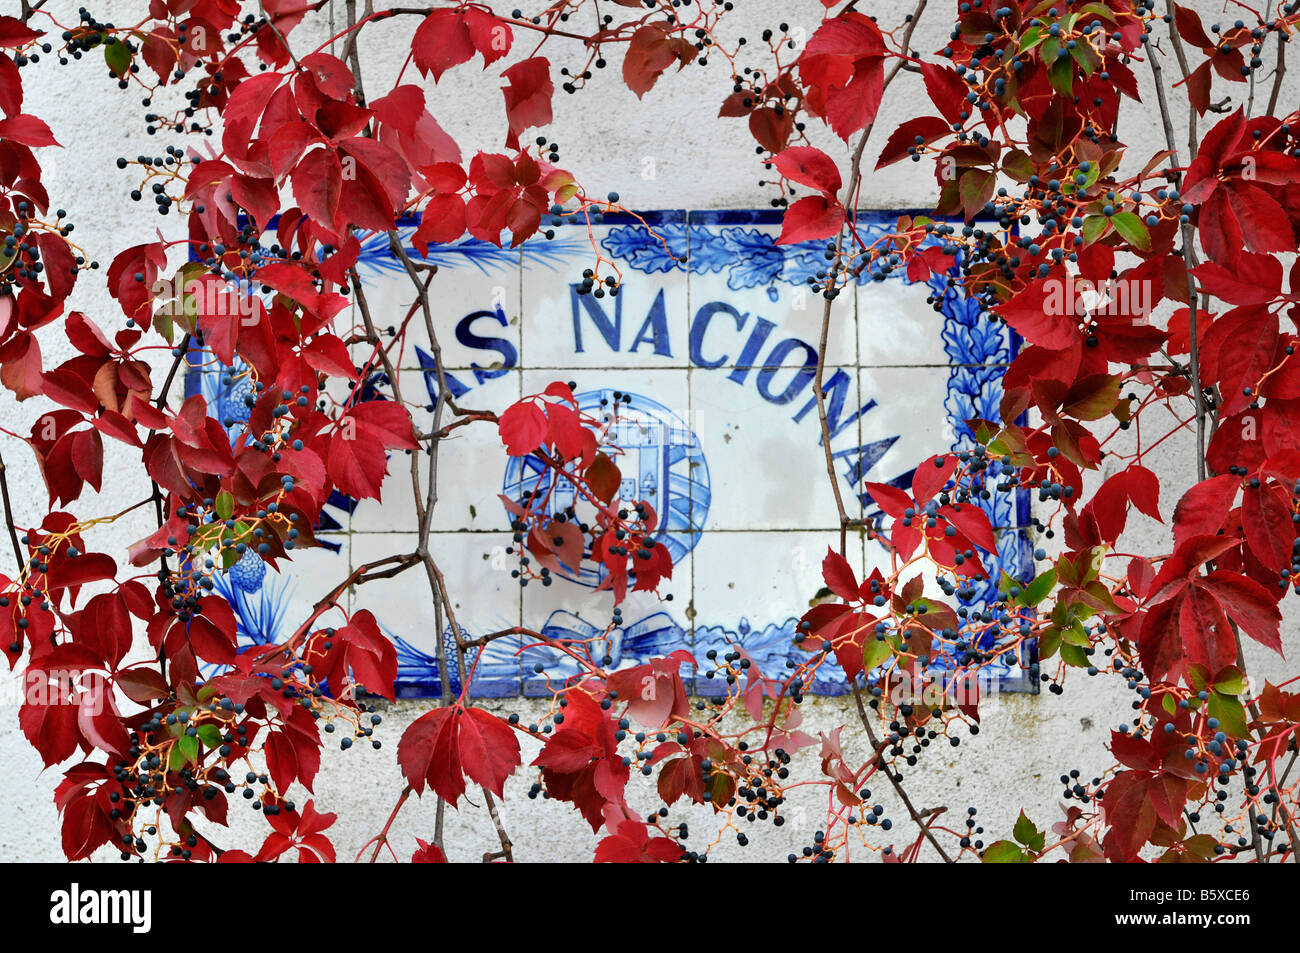 Virginia creeper over a informative plaque. Matas Nacionais. Tomar, Portugal Stock Photo